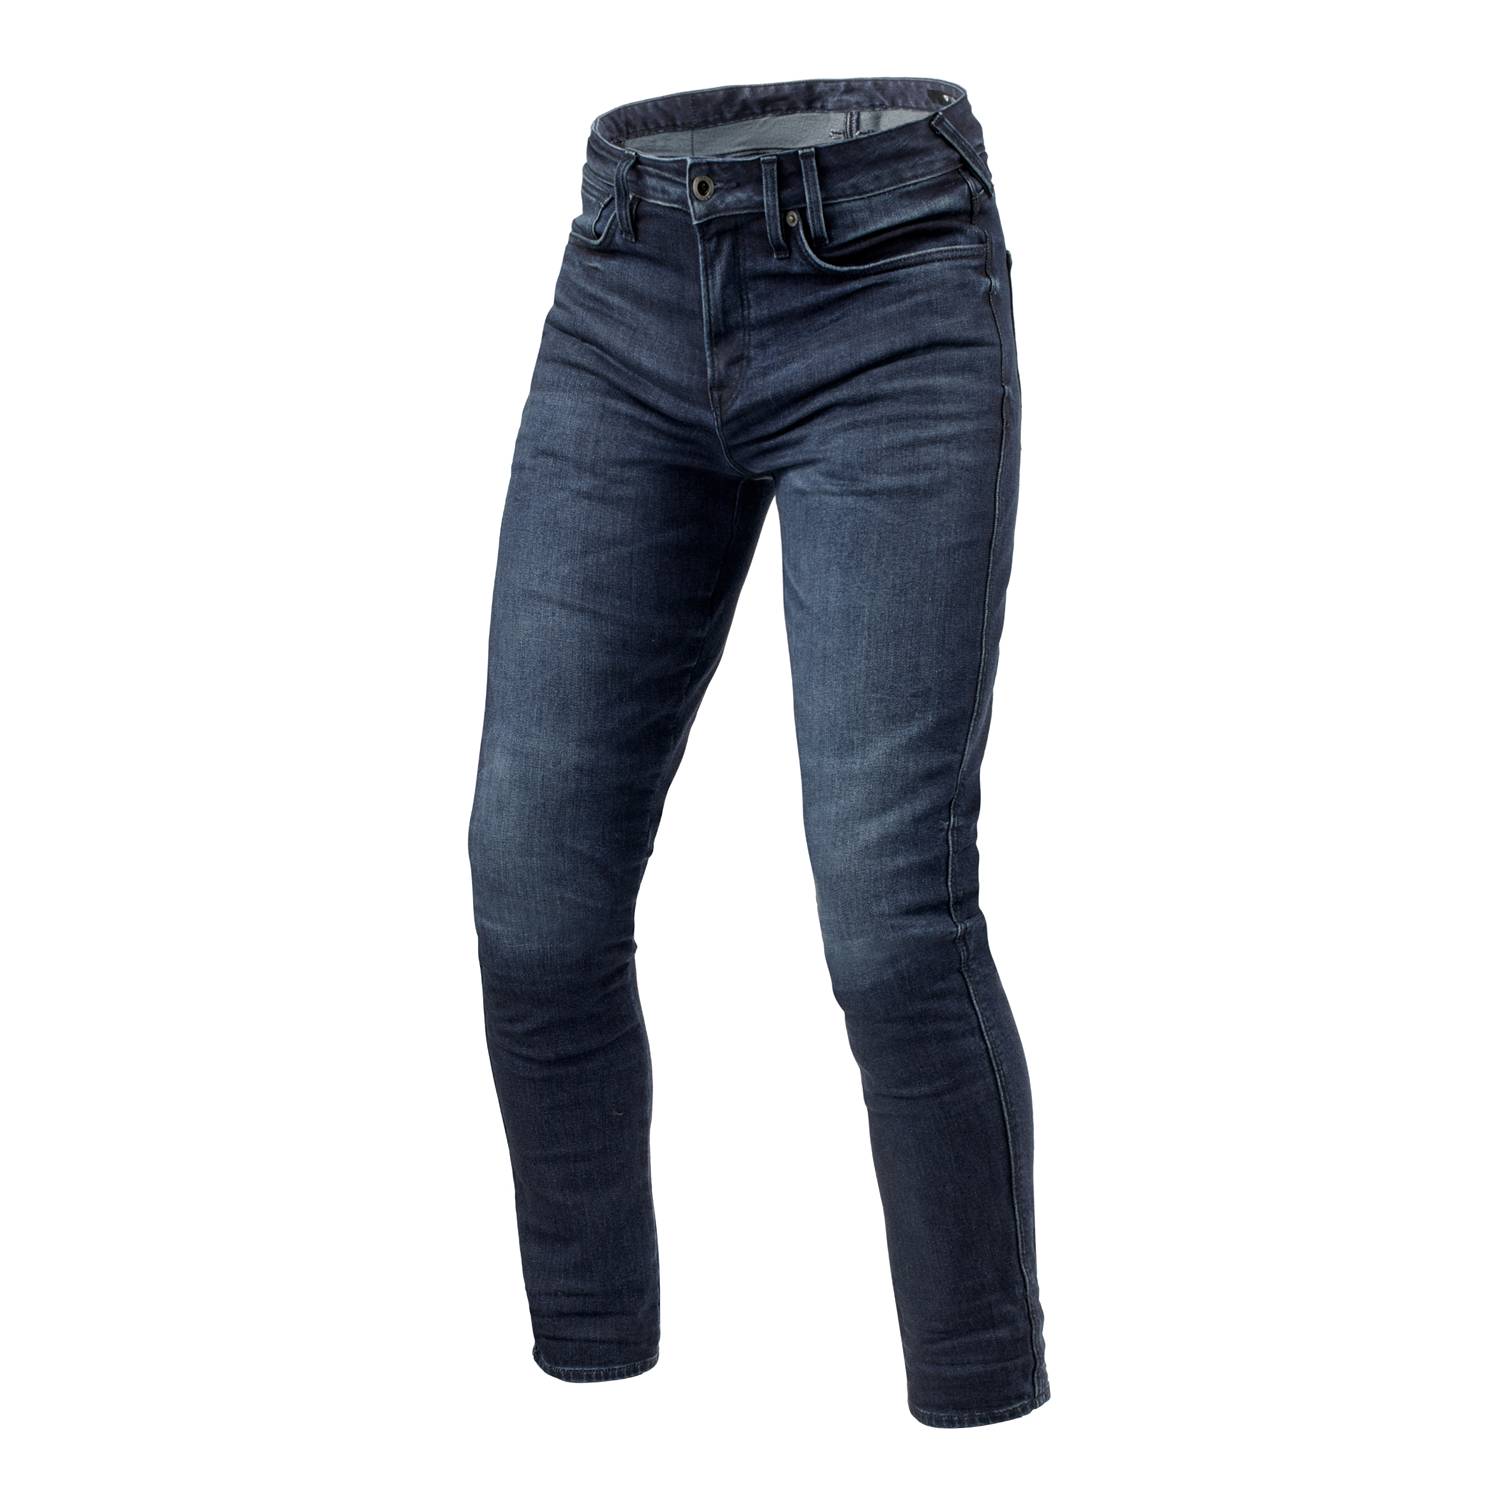 Image of REV'IT! Jeans Carlin SK Dark Blue Used L36 Motorcycle Jeans Size L36/W33 EN